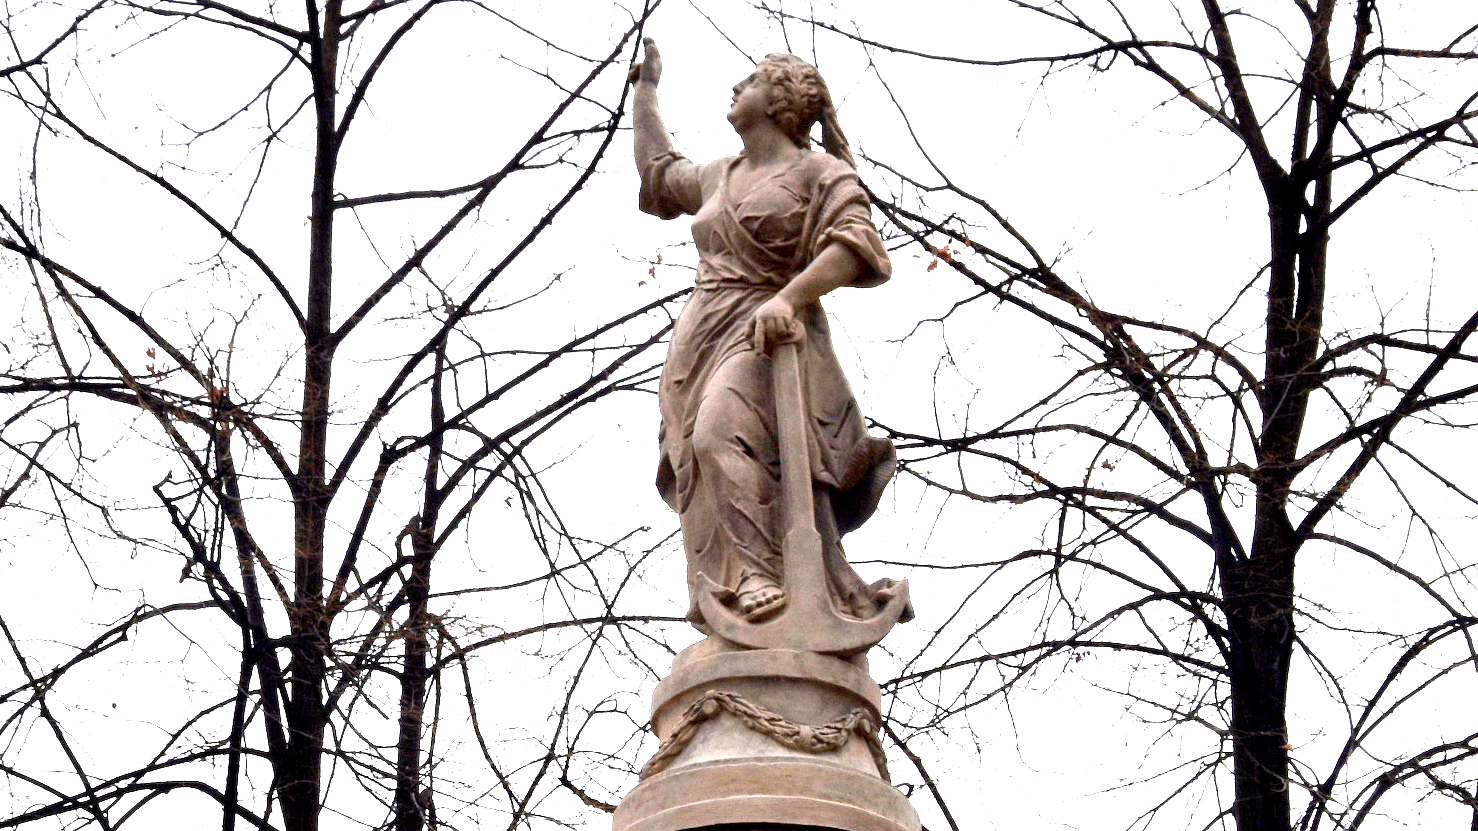 Rzeźba przedstawiająca kobiete w sukni z uniesioną głową i uniesioną jedną ręką